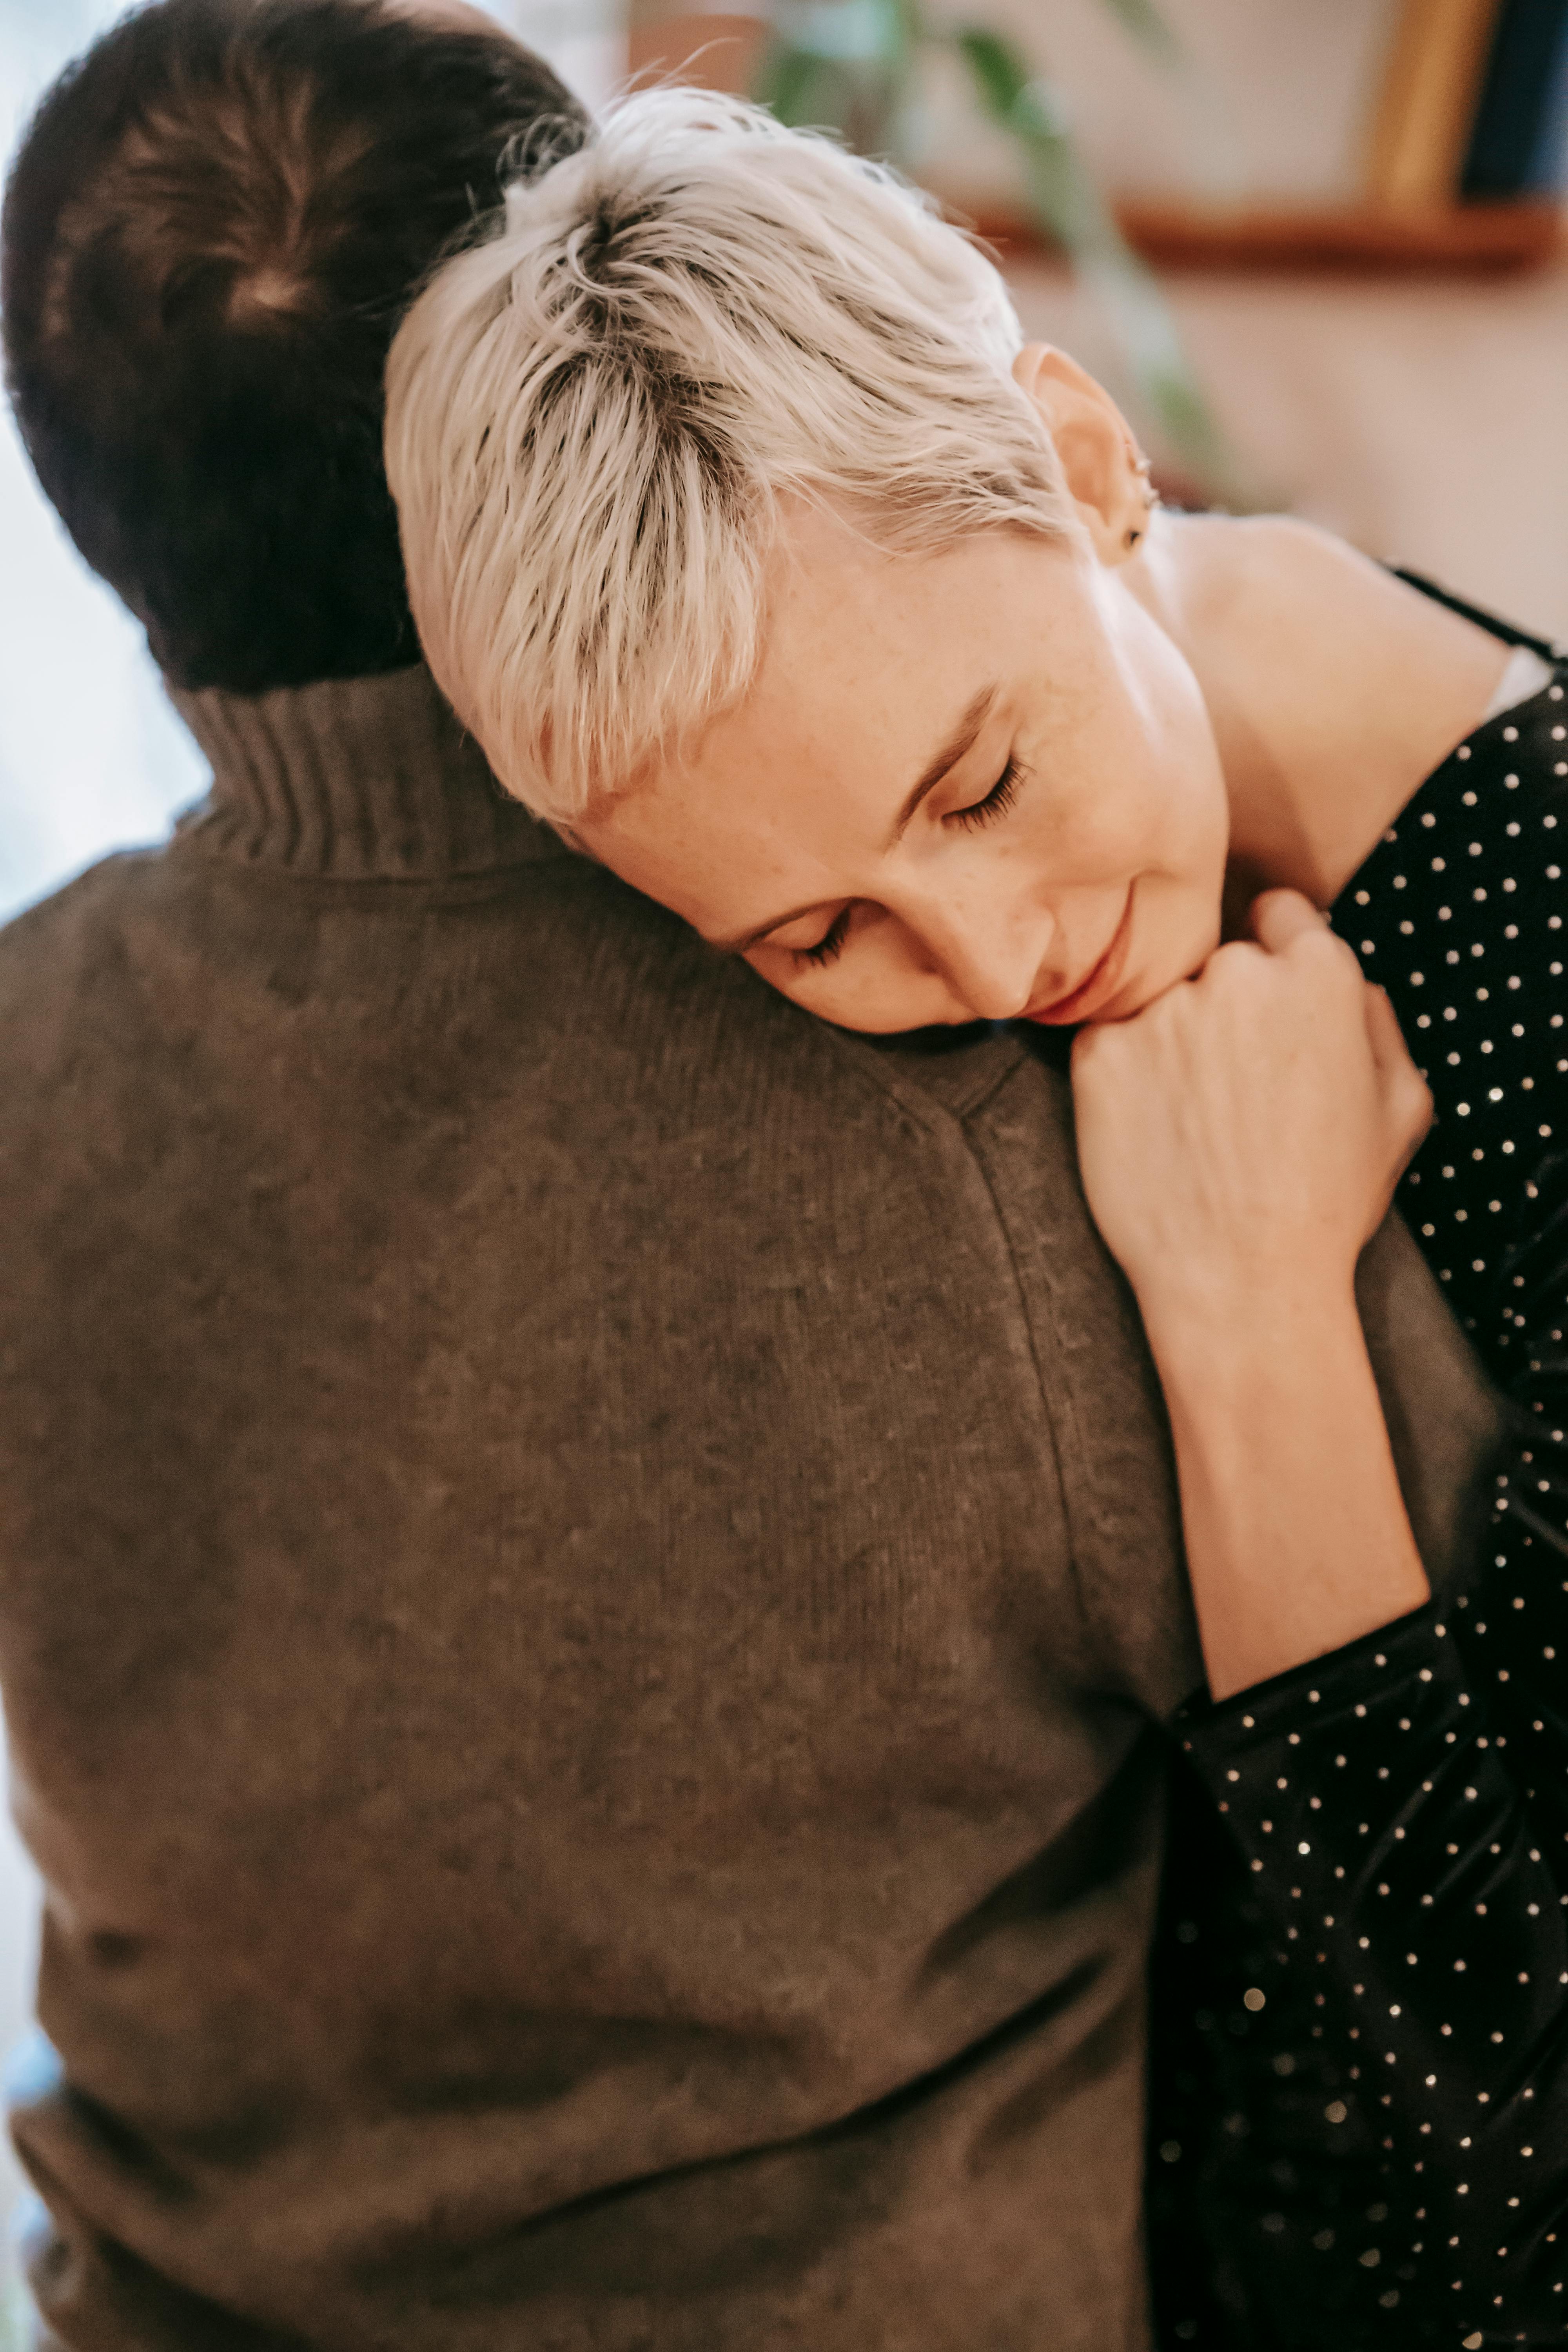 Un hombre y una mujer abrazándose | Fuente: Pexels